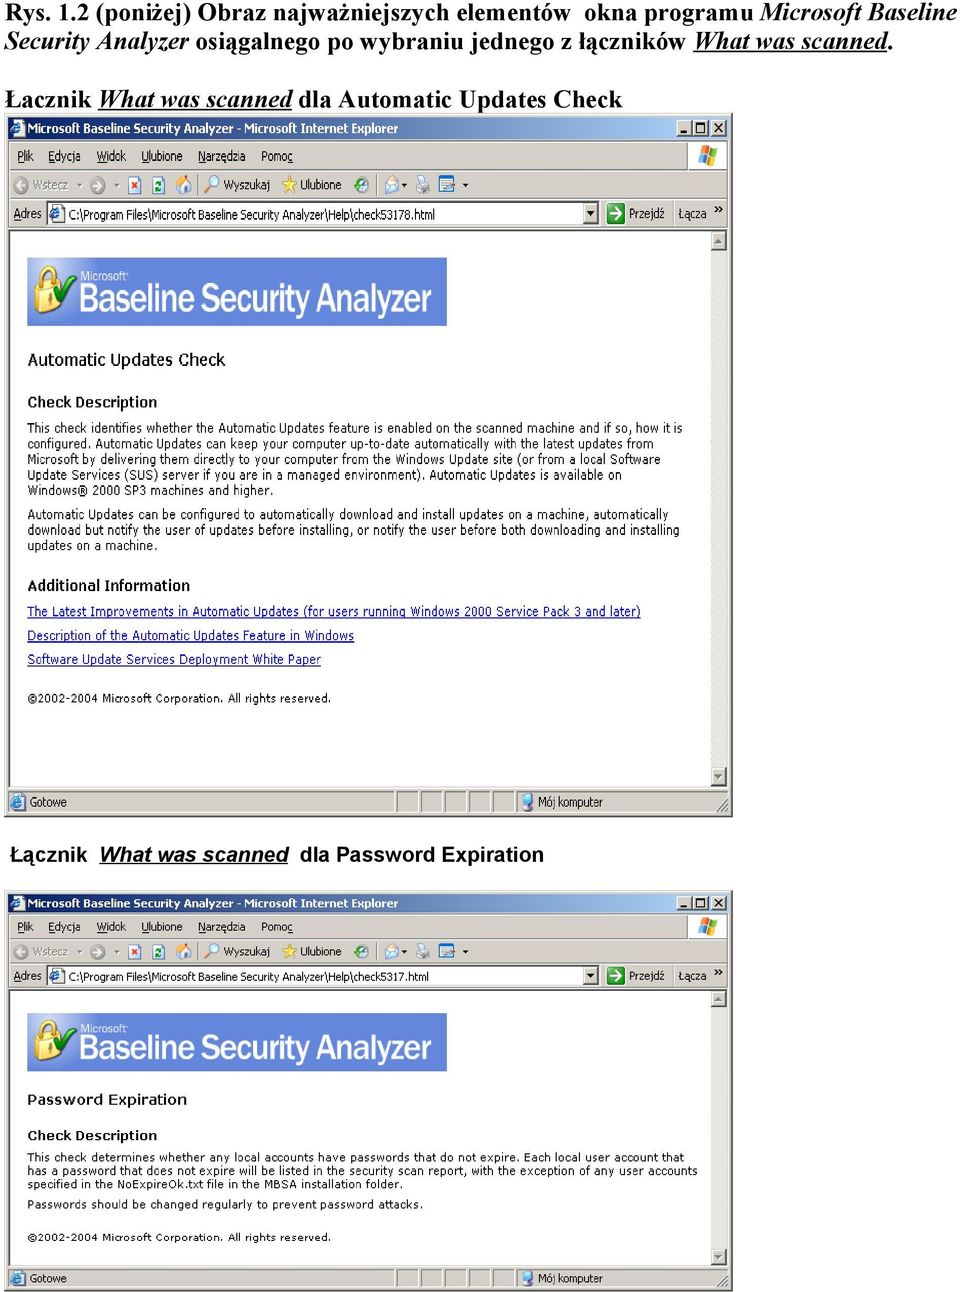 Microsoft Baseline Security Analyzer osiągalnego po wybraniu